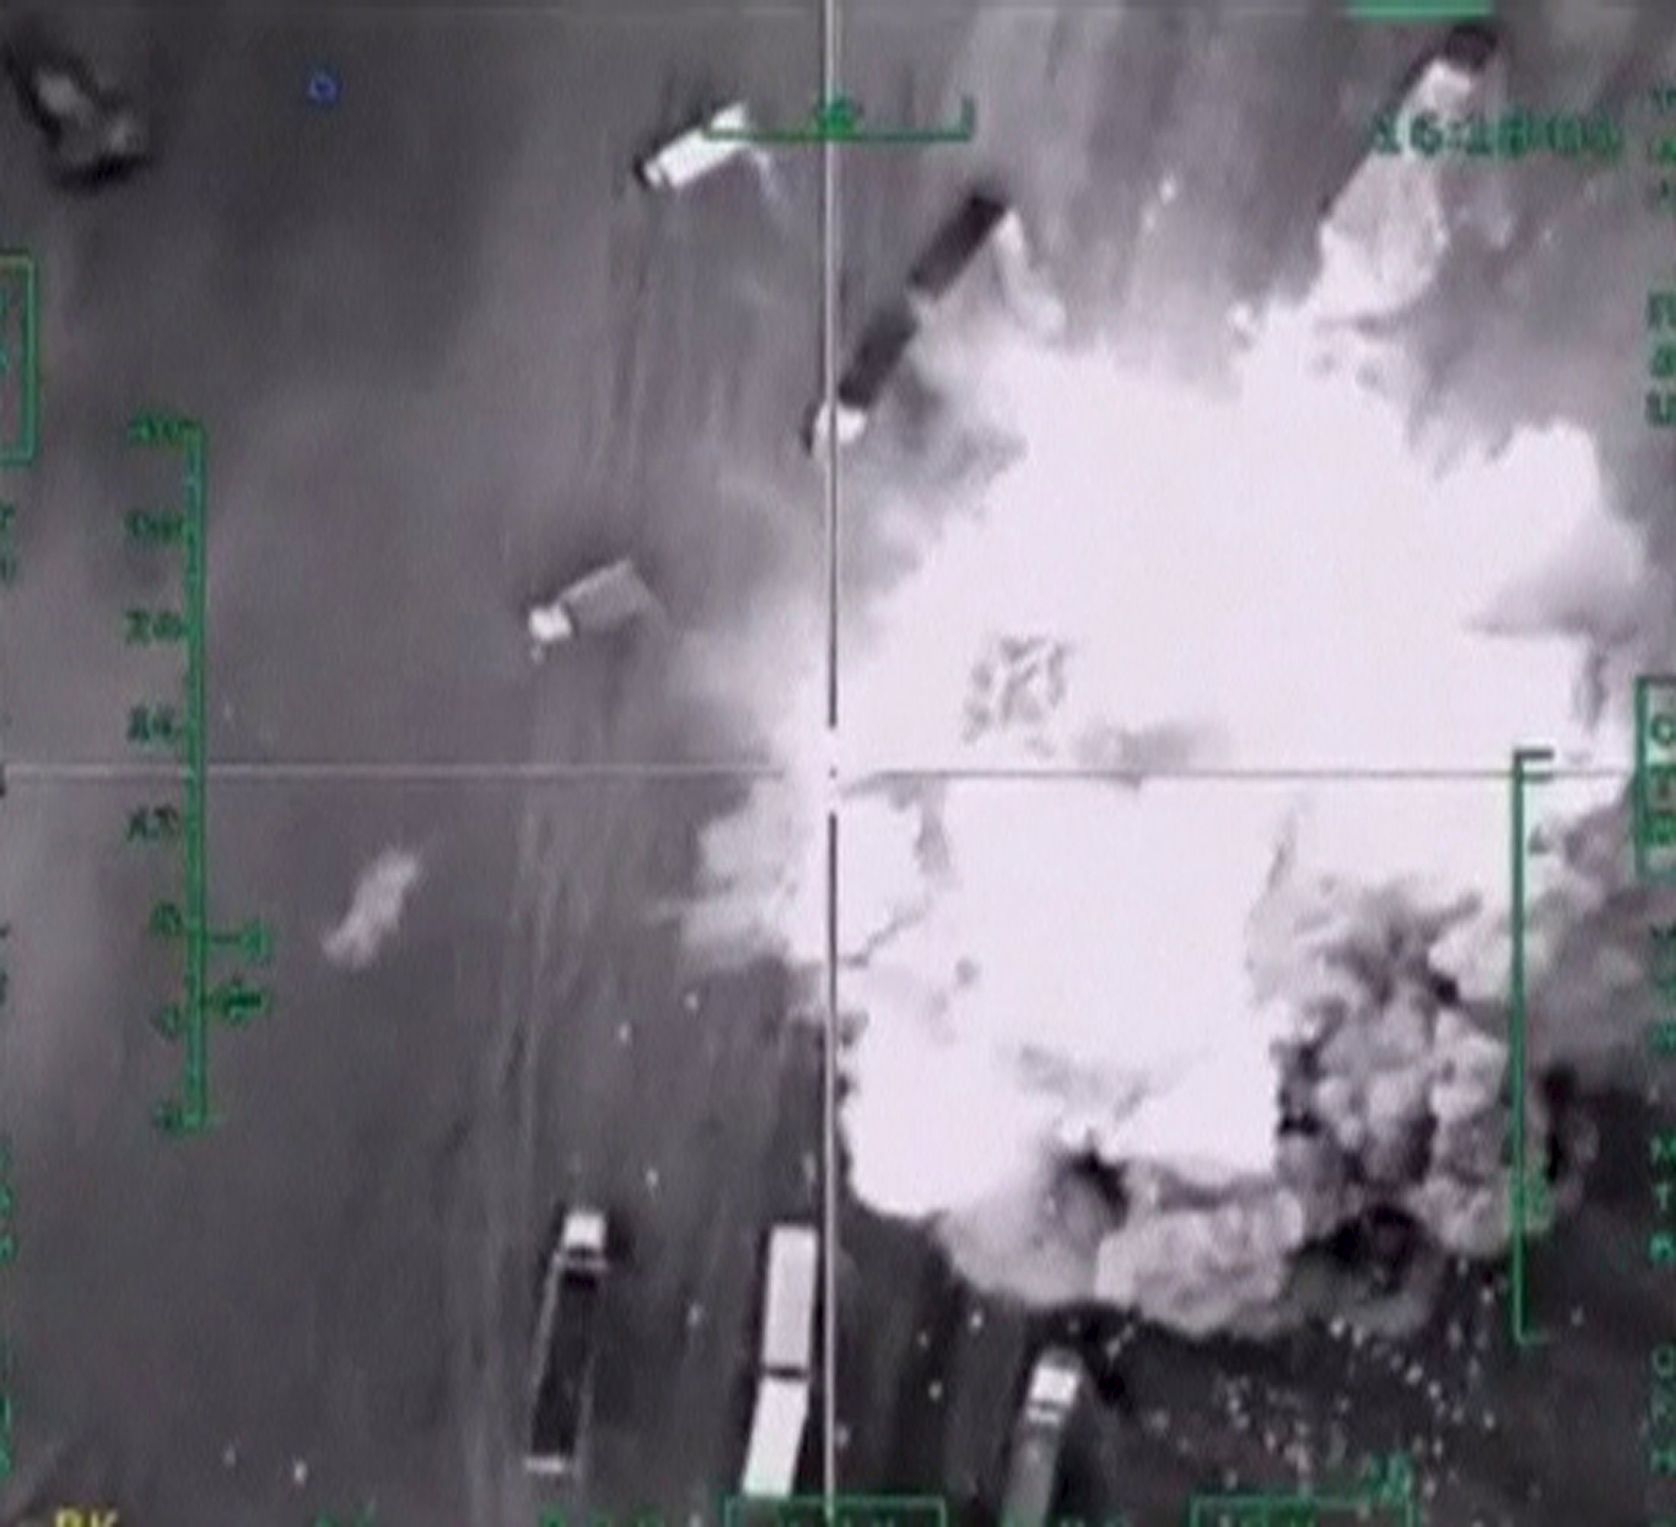 Záběr z bombardování, zveřejněný ruským ministerstvem obrany.